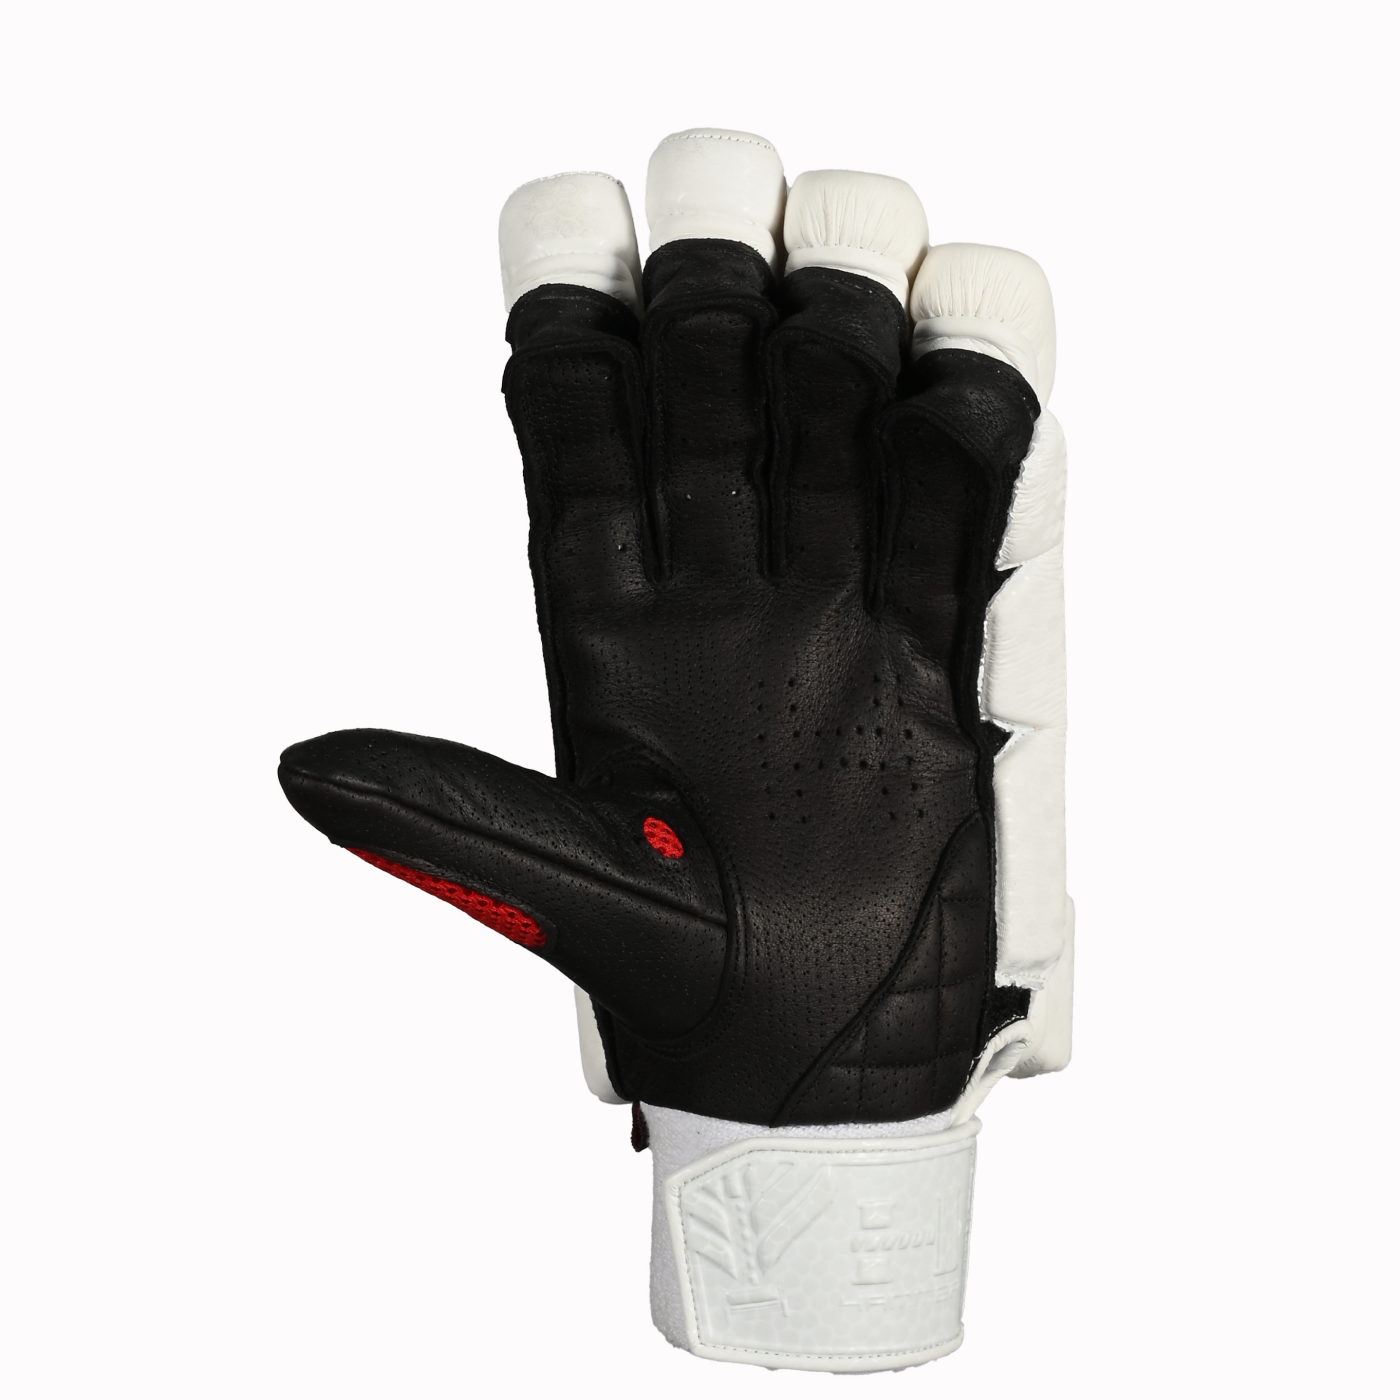 Hammer Black Edition Batting Gloves